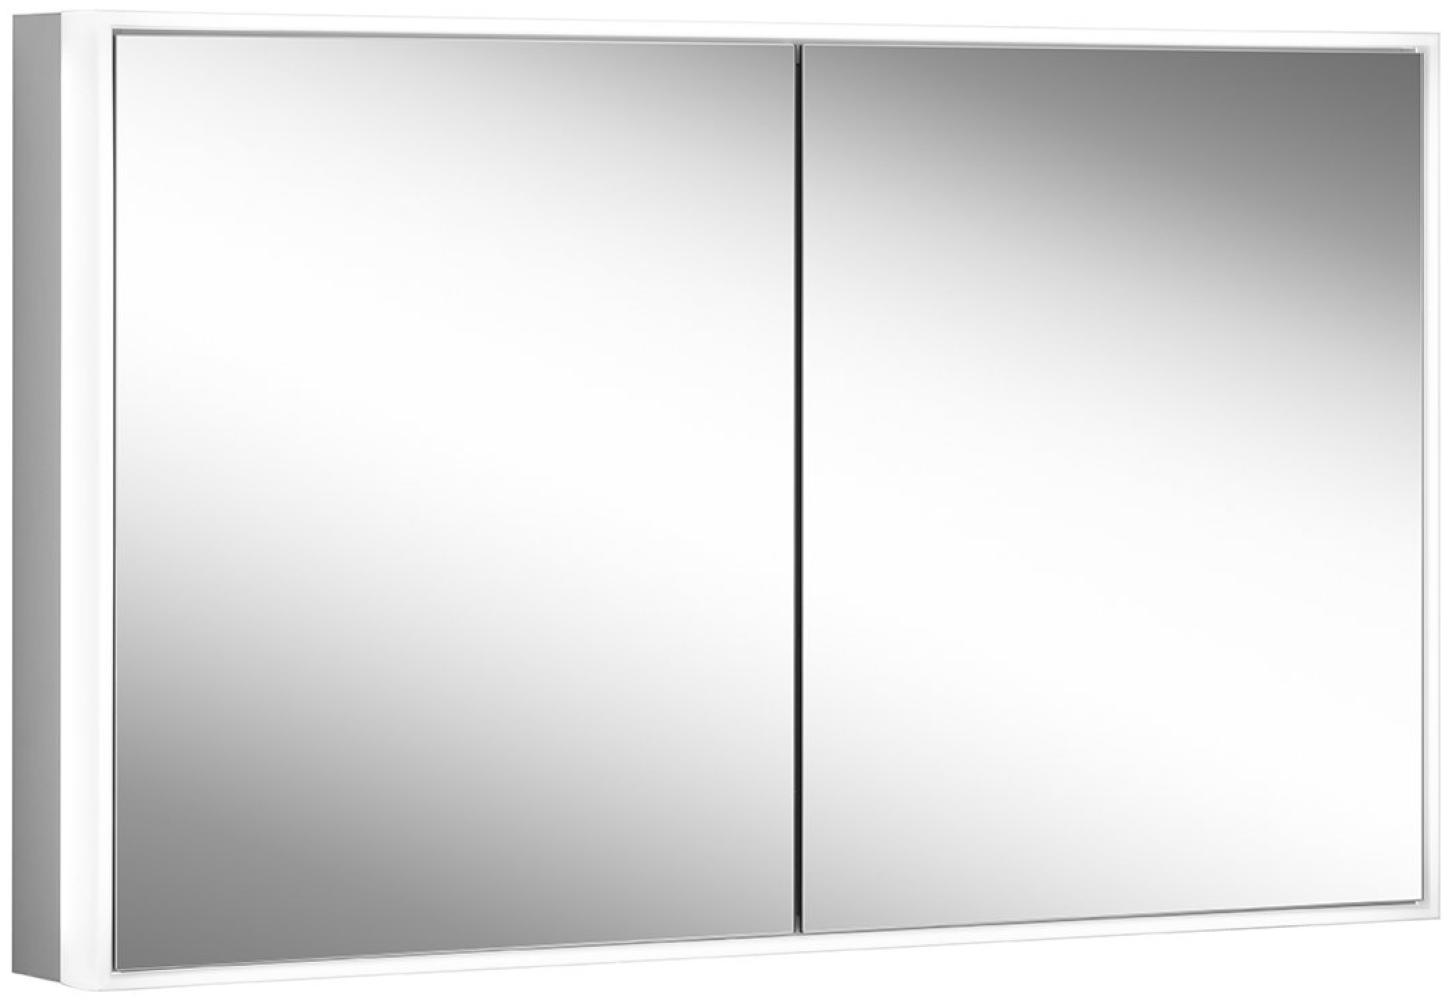 Schneider PREMIUM Line Ultimate LED Lichtspiegelschrank, 2 Doppelspiegeltüren, 1225x73,3x15,8cm, 182. 120, Ausführung: EU-Norm/Korpus silber eloxiert - 182. 120. 02. 50 Bild 1